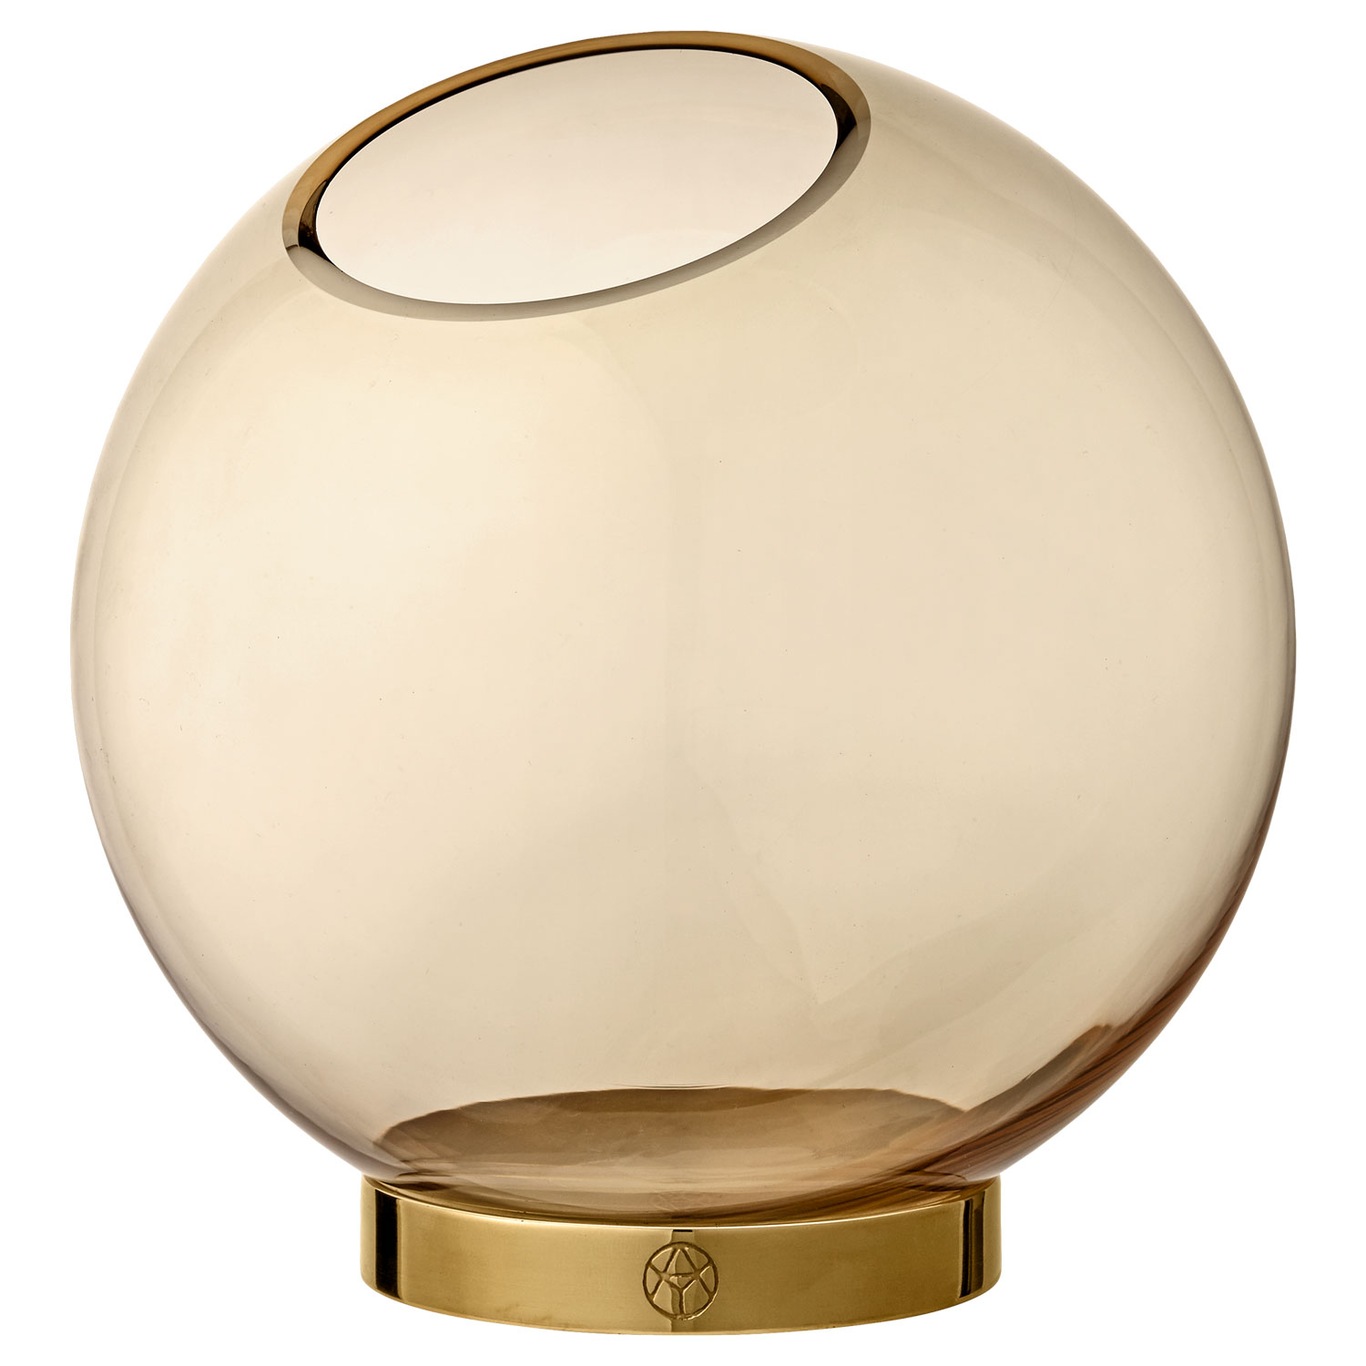 에이와이티엠 Globe 화병 꽃병 17 cm AMBER/브라스 AYTM Globe Vase Ø17 cm  Amber/Brass 06385